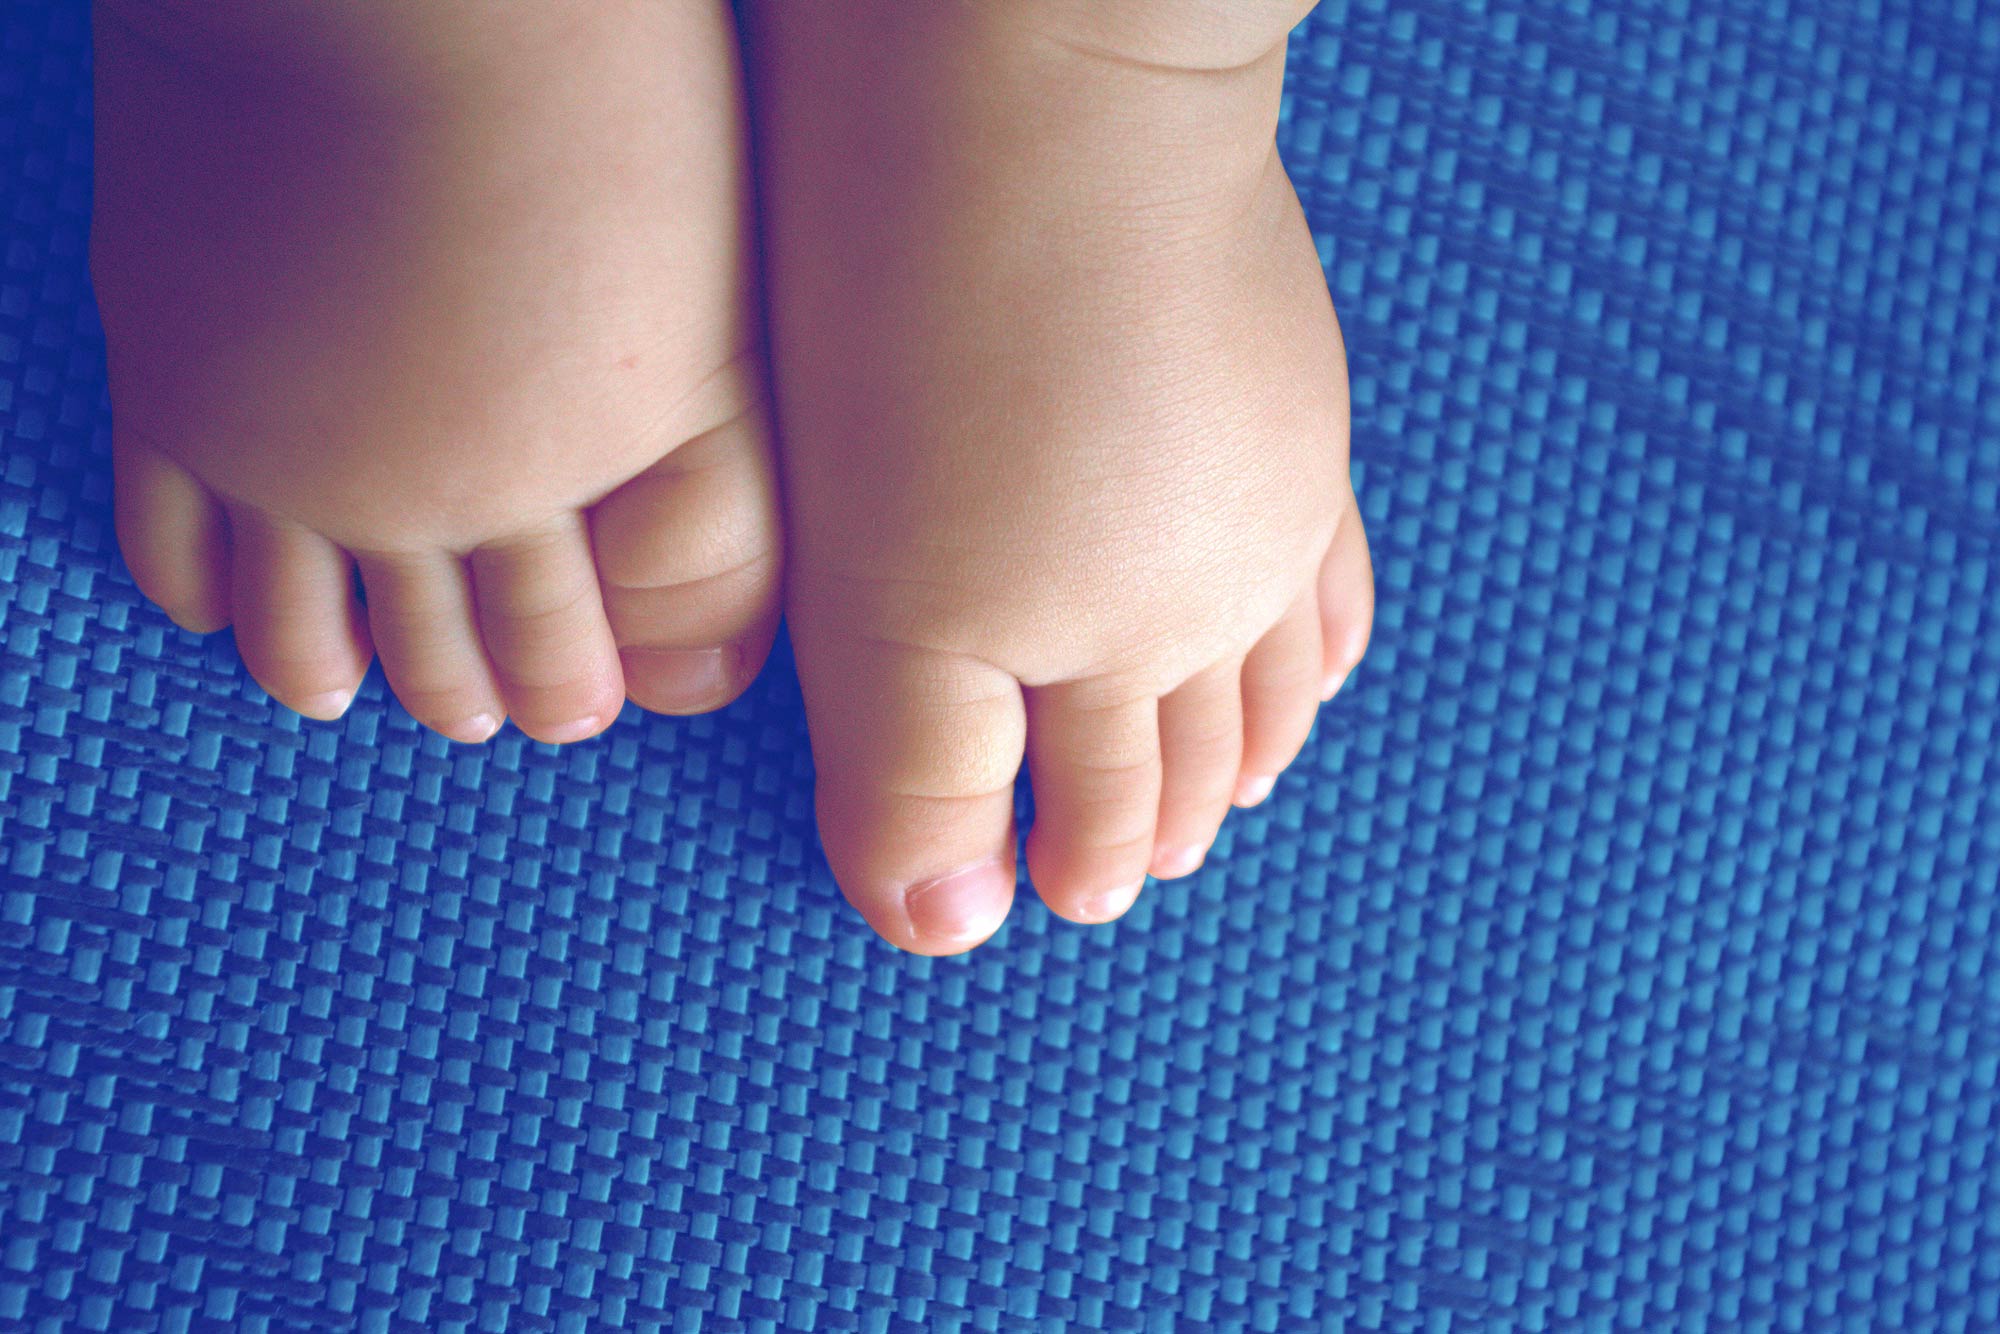 Baby feet on a blue mat